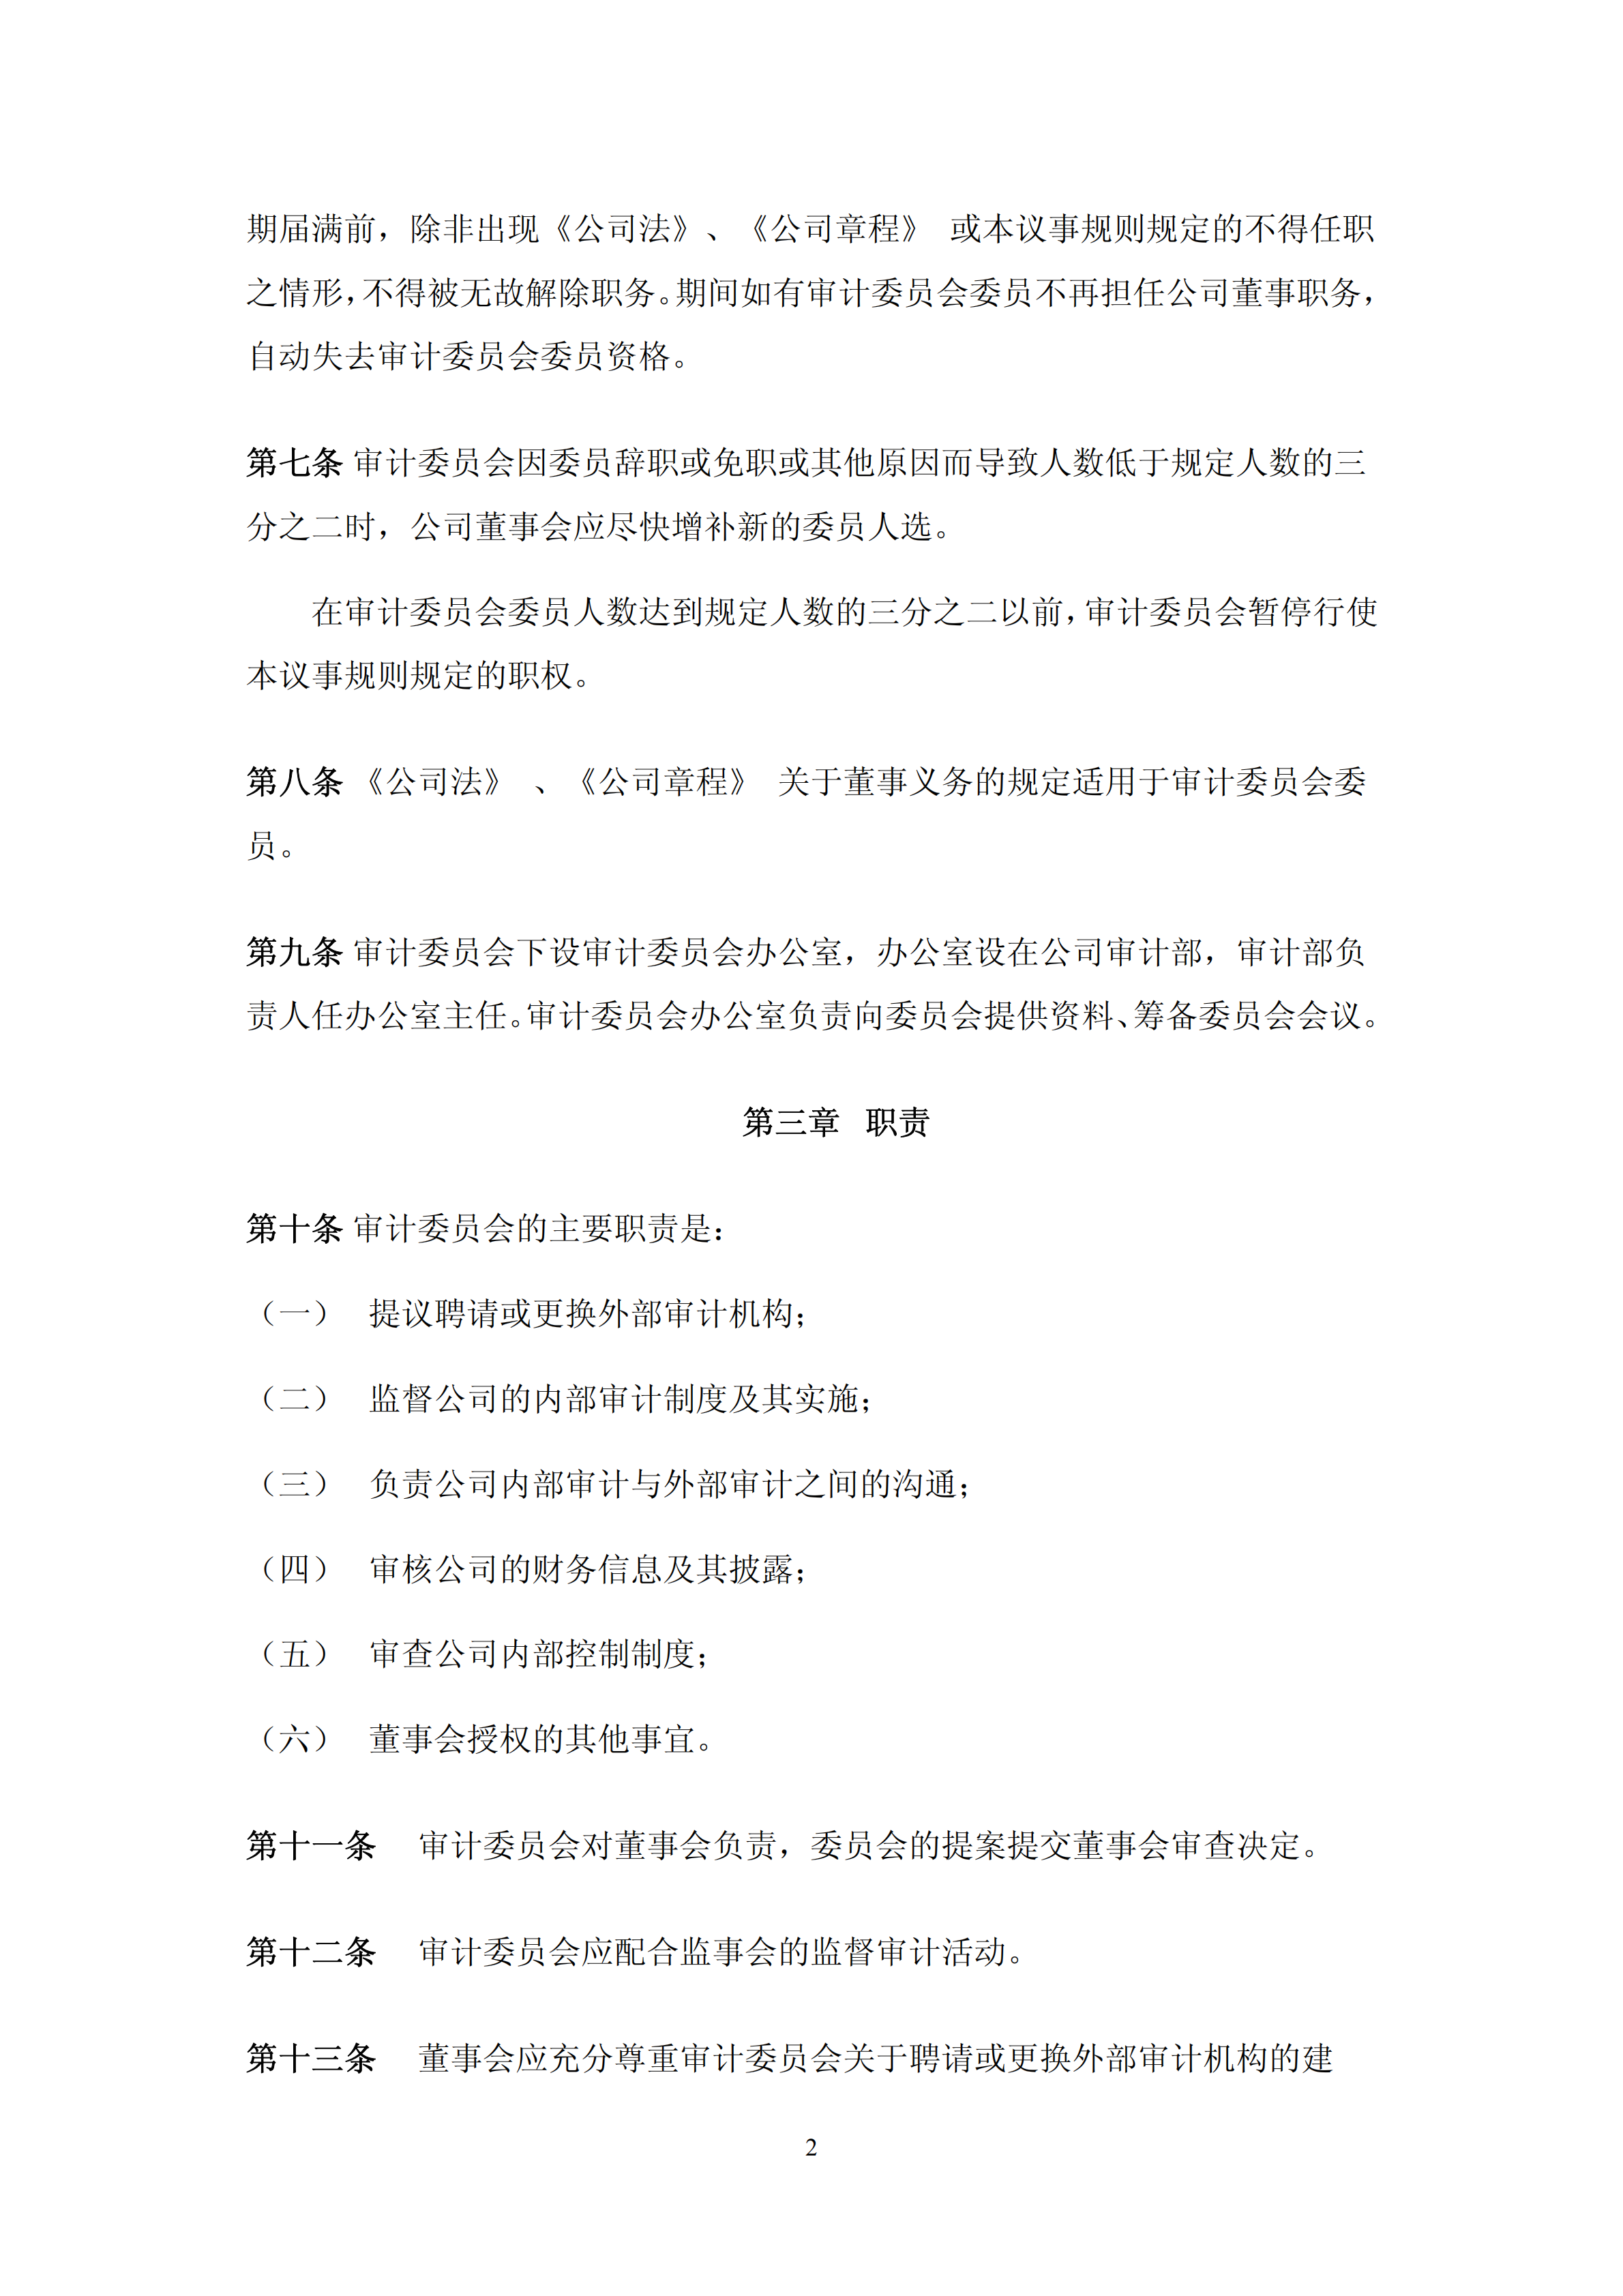 湛江某公司审计委员会议事规则pdf模板-2